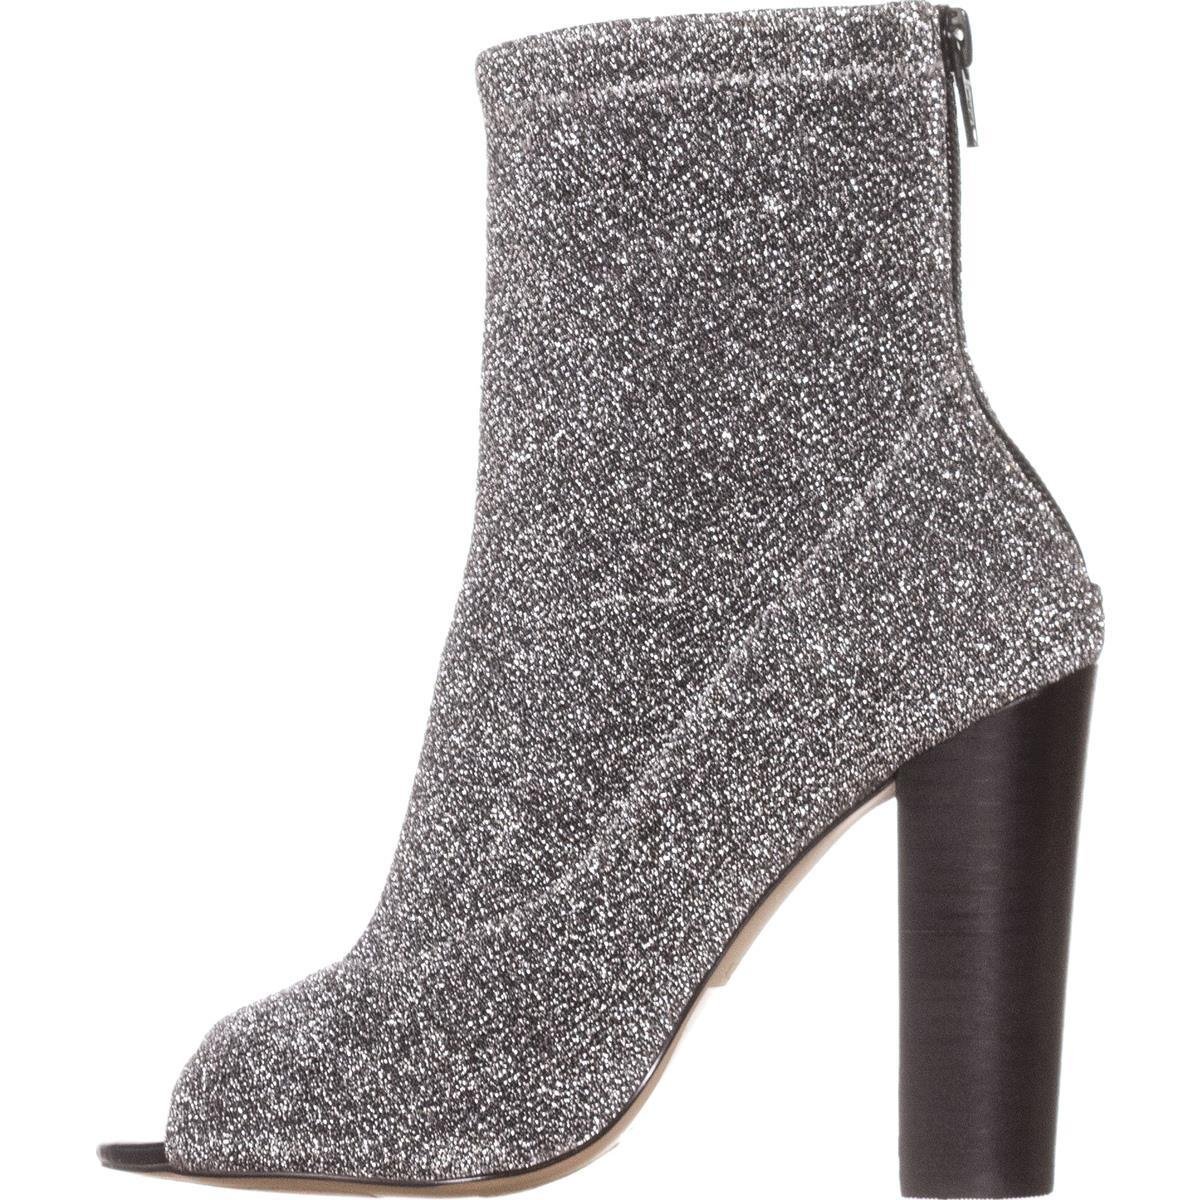 Aldo Womens Loviradda-81 Open Toe Ankle Fashion Boots, Silver, Size 6.5 ...